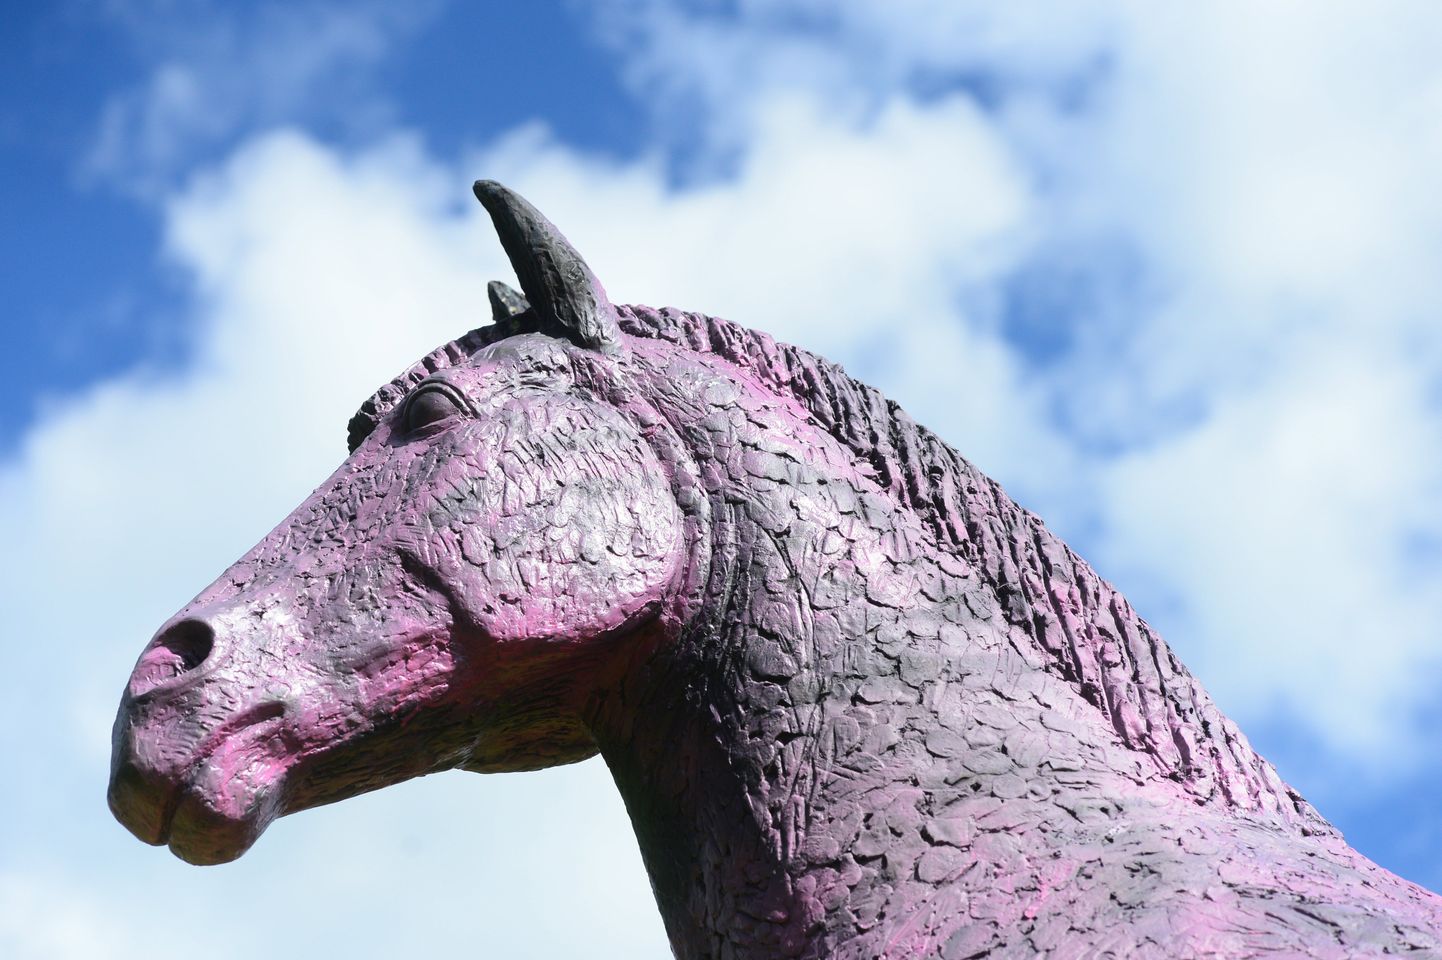 Haldusreformi ja poliitiliste võitluste ajal värvis keegi salaja lillaks asula pargis kõrguva hobuseskulptuuri.